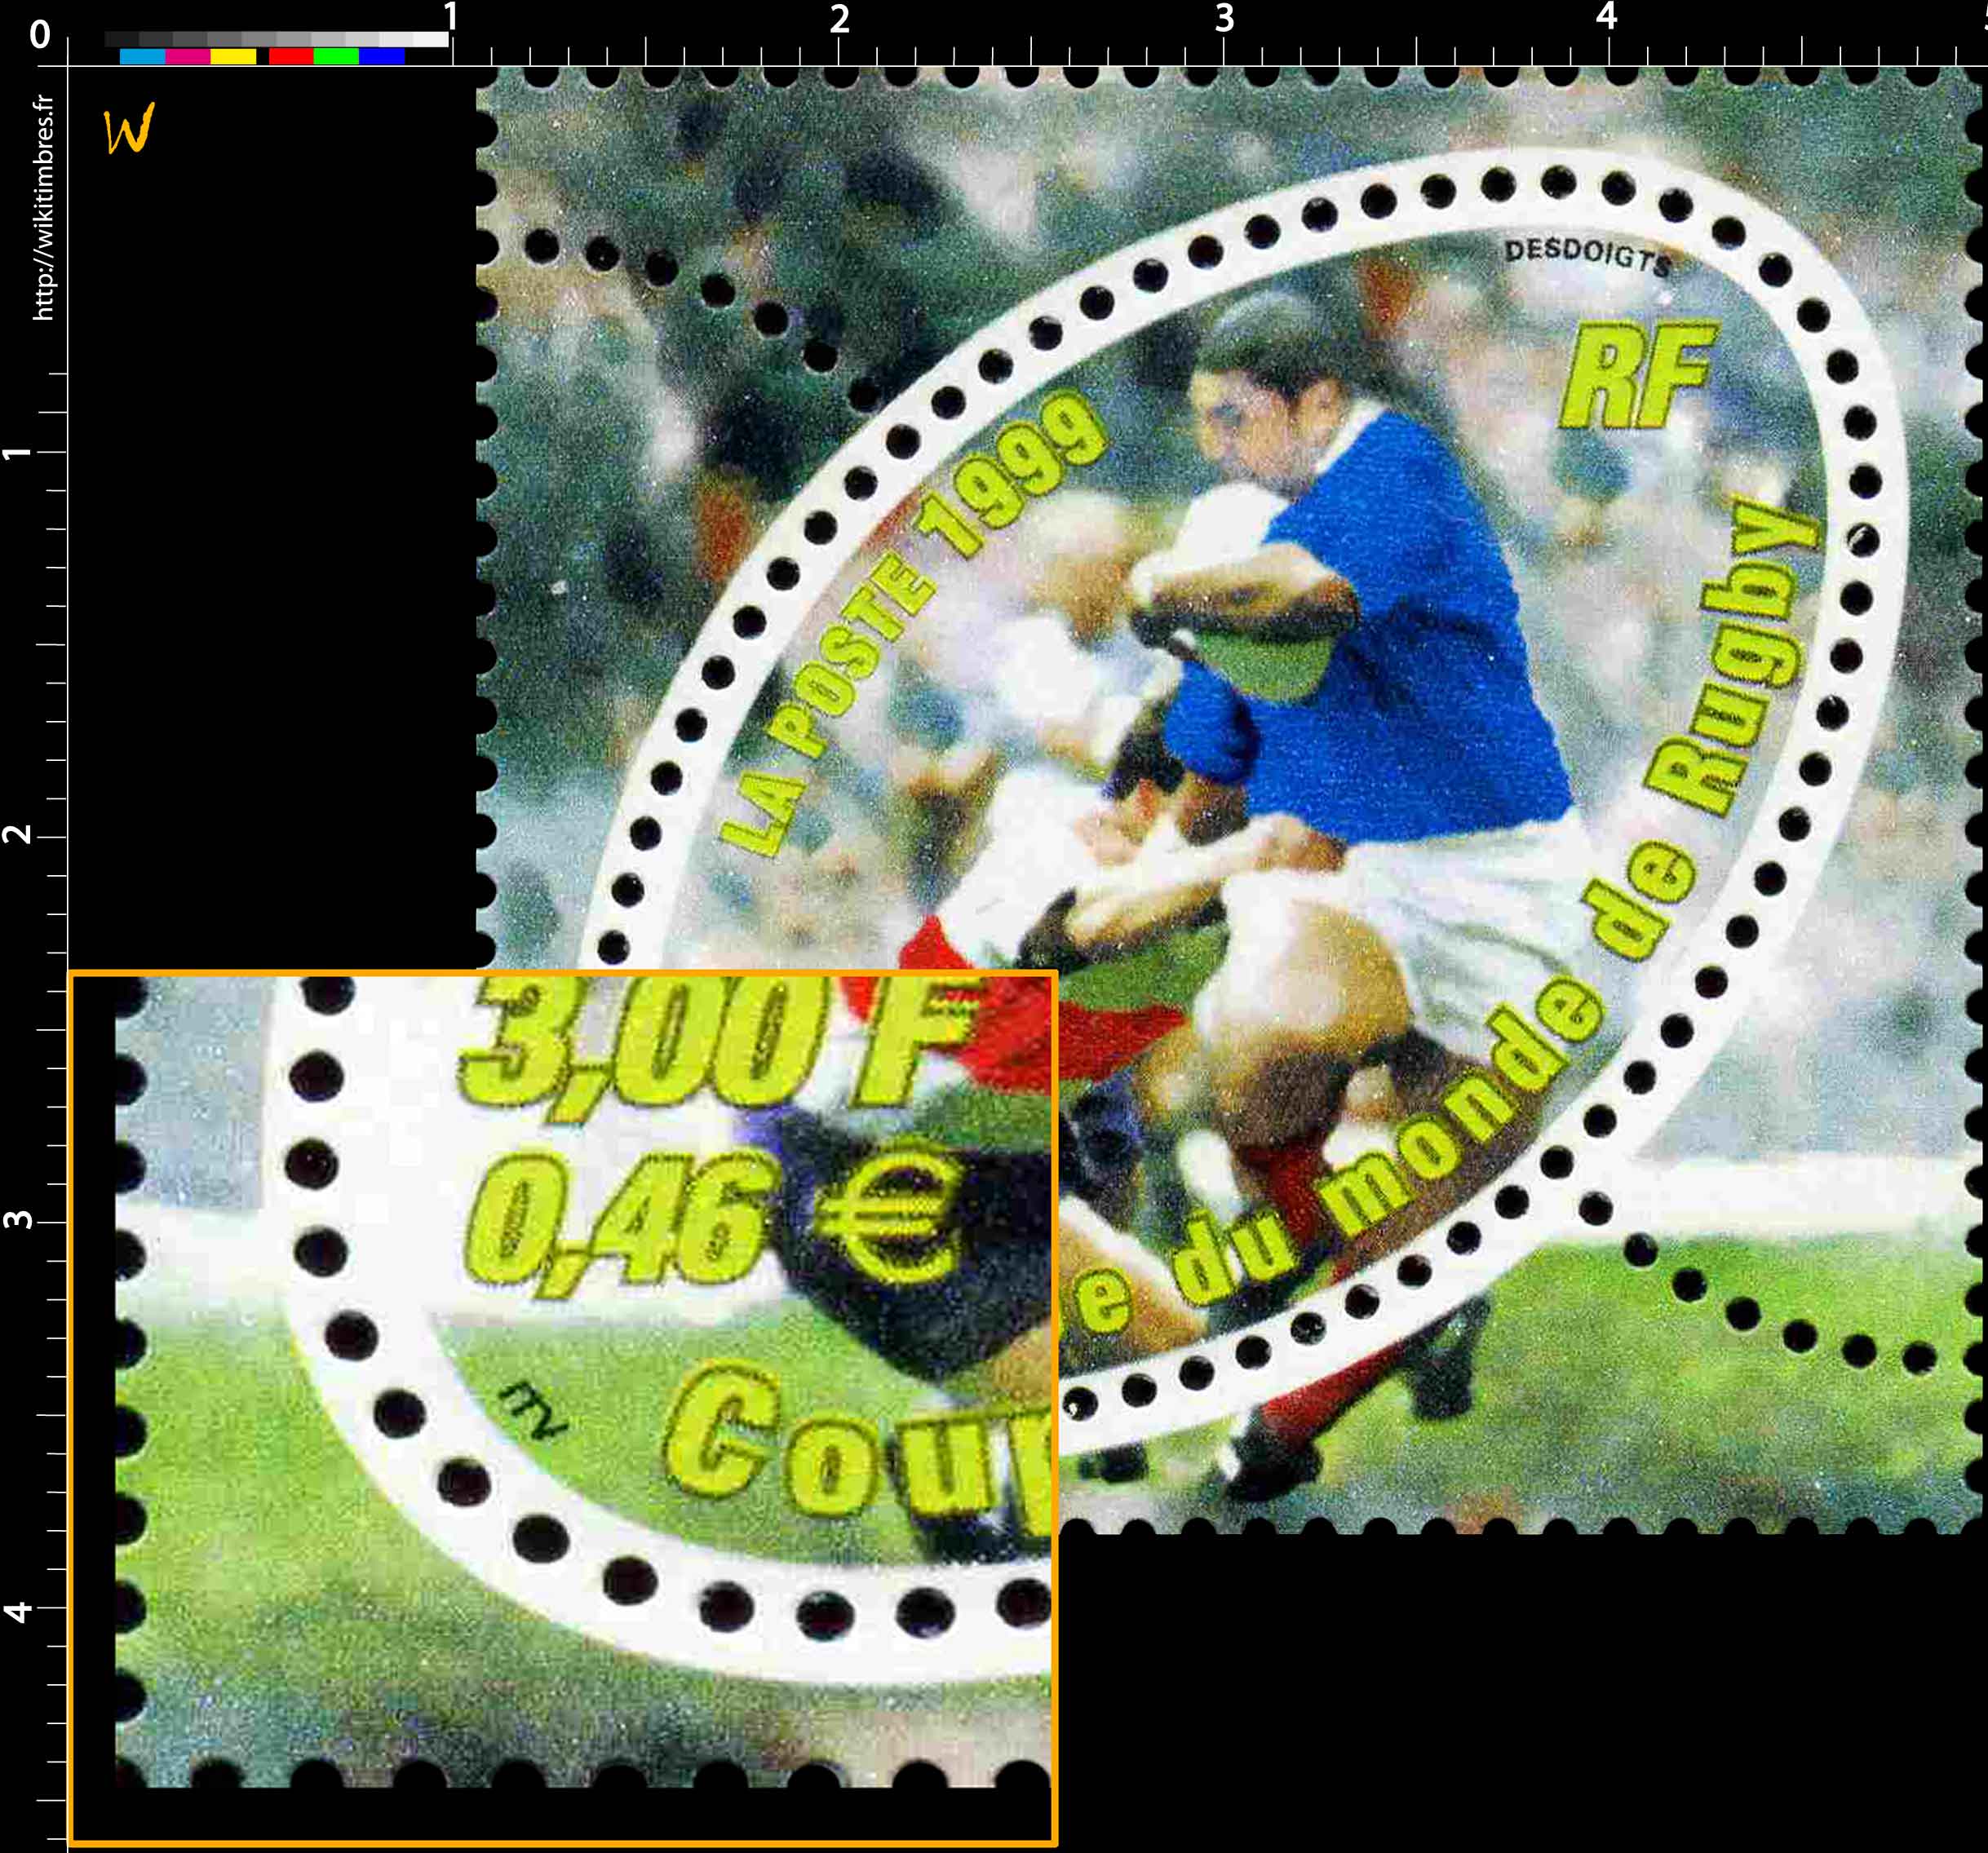 1999 Coupe du monde de rugby